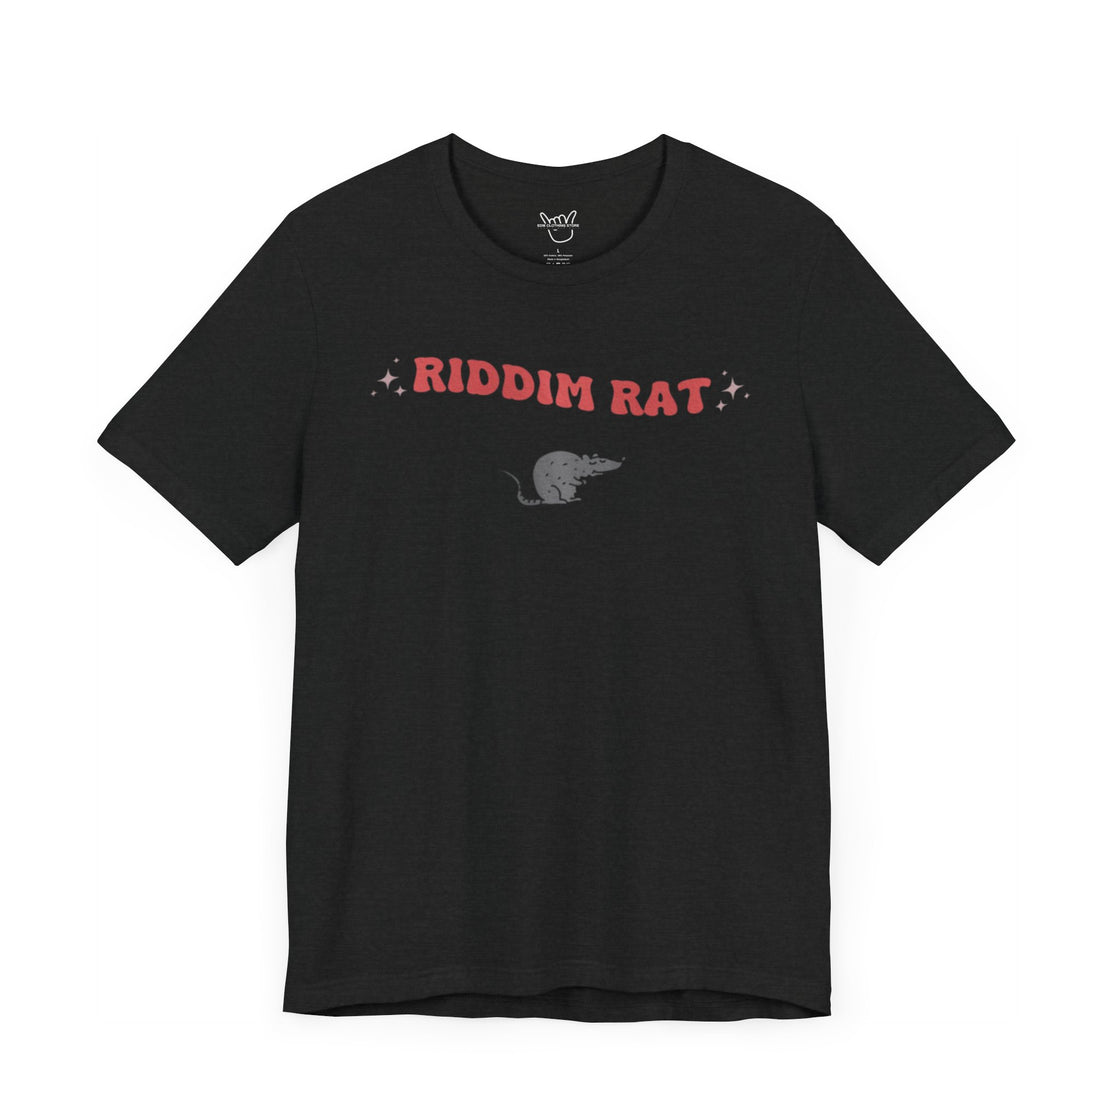 Riddim rat tshirt- edm merch- edm tshirt- riddim tshirt-rave shirt-feral edm tshirt